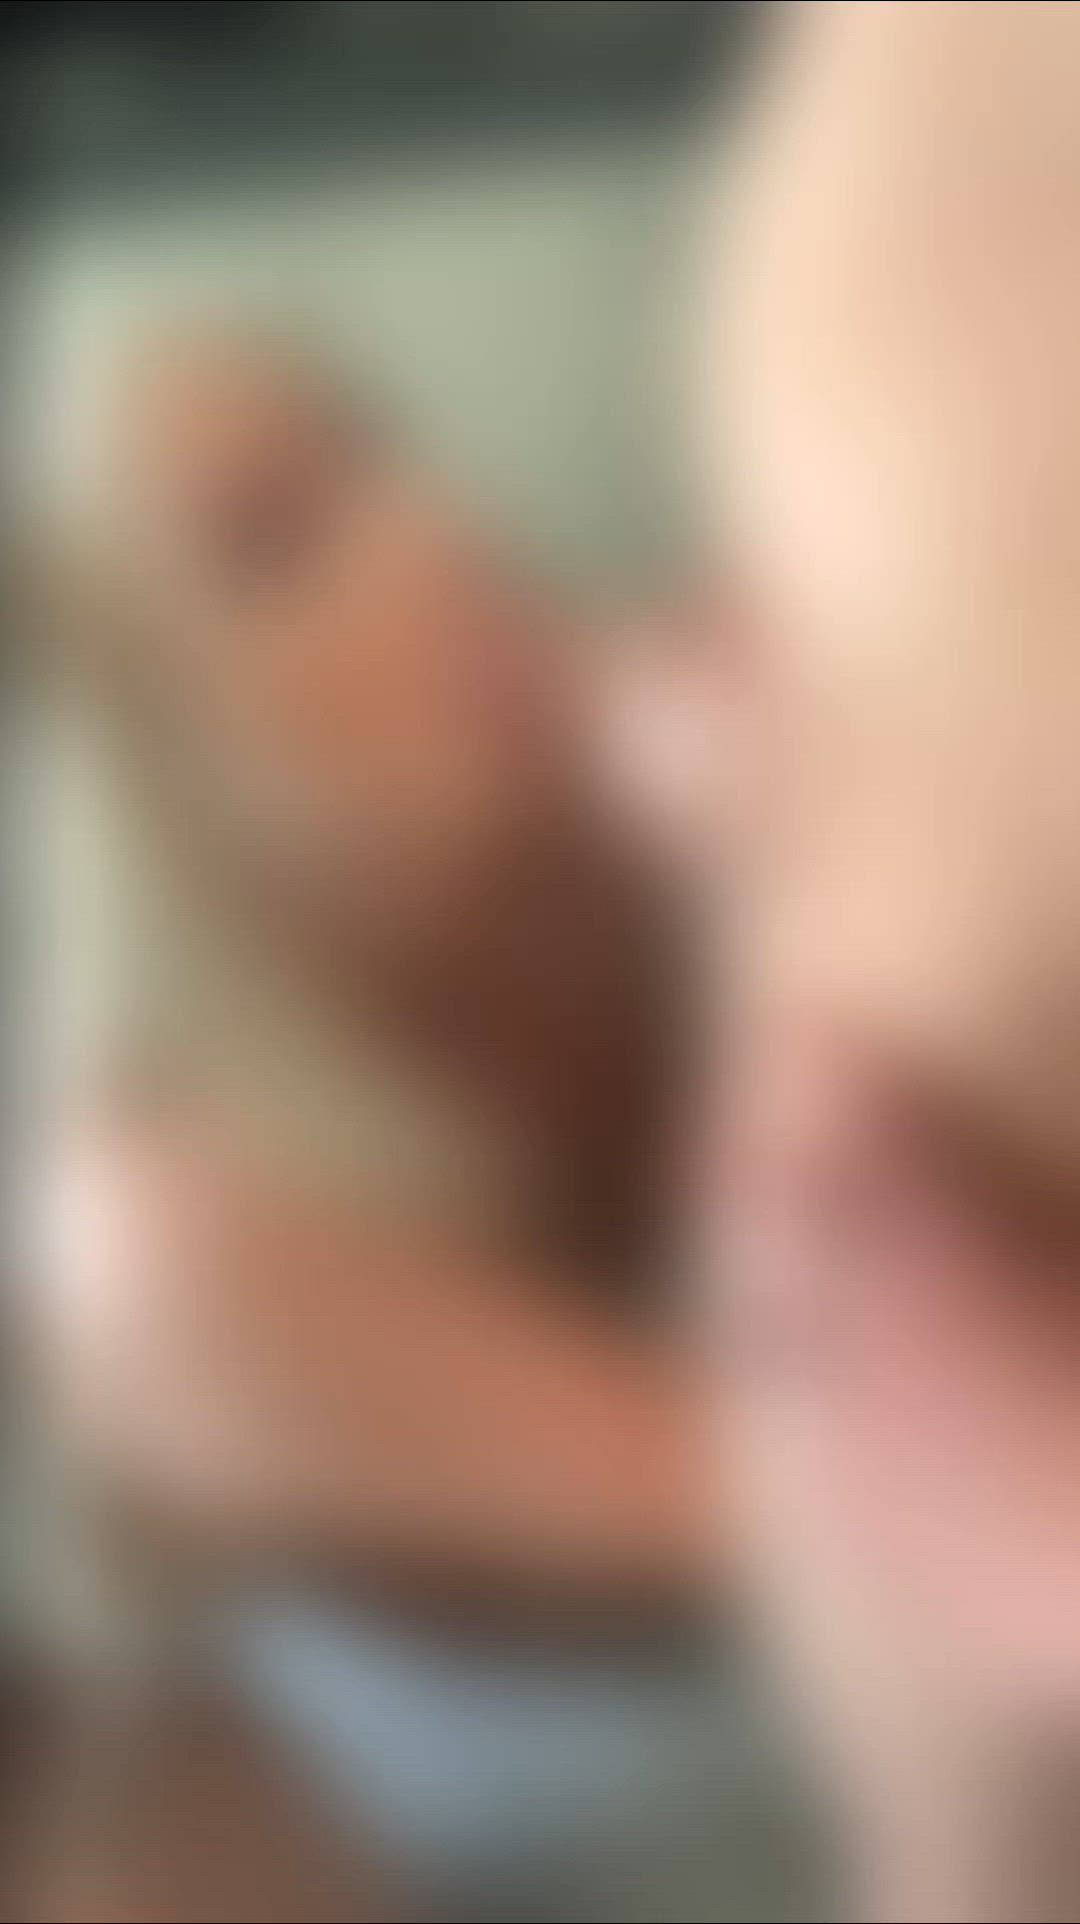 Ass porn video with onlyfans model ostkreuz <strong>@juicyassqueen</strong>